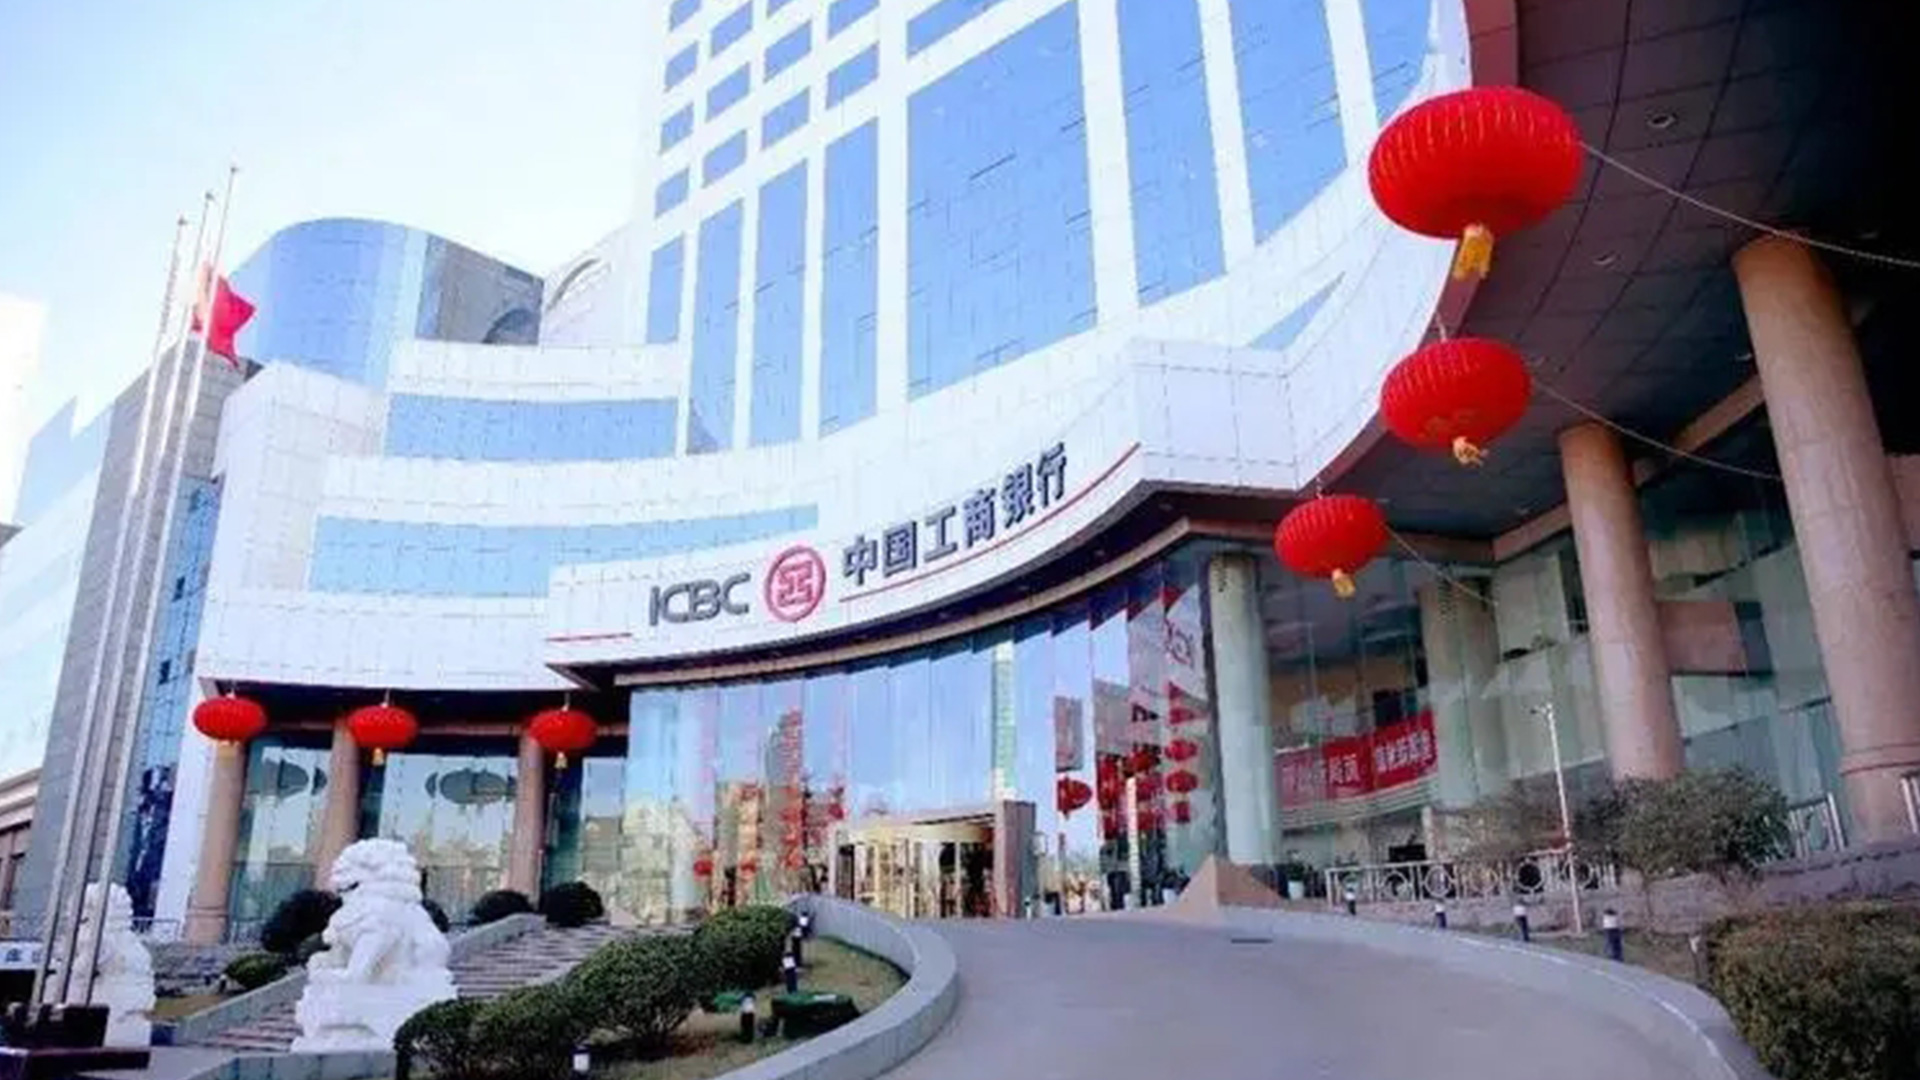 中国工商银行ICBC的标志设计大楼形象.jpg